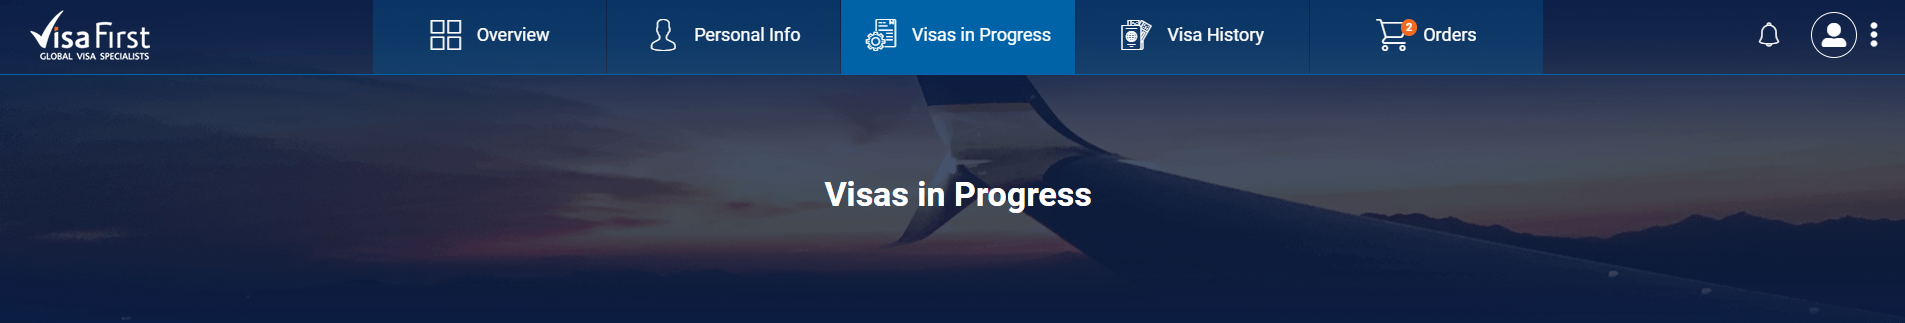 Visa First Software